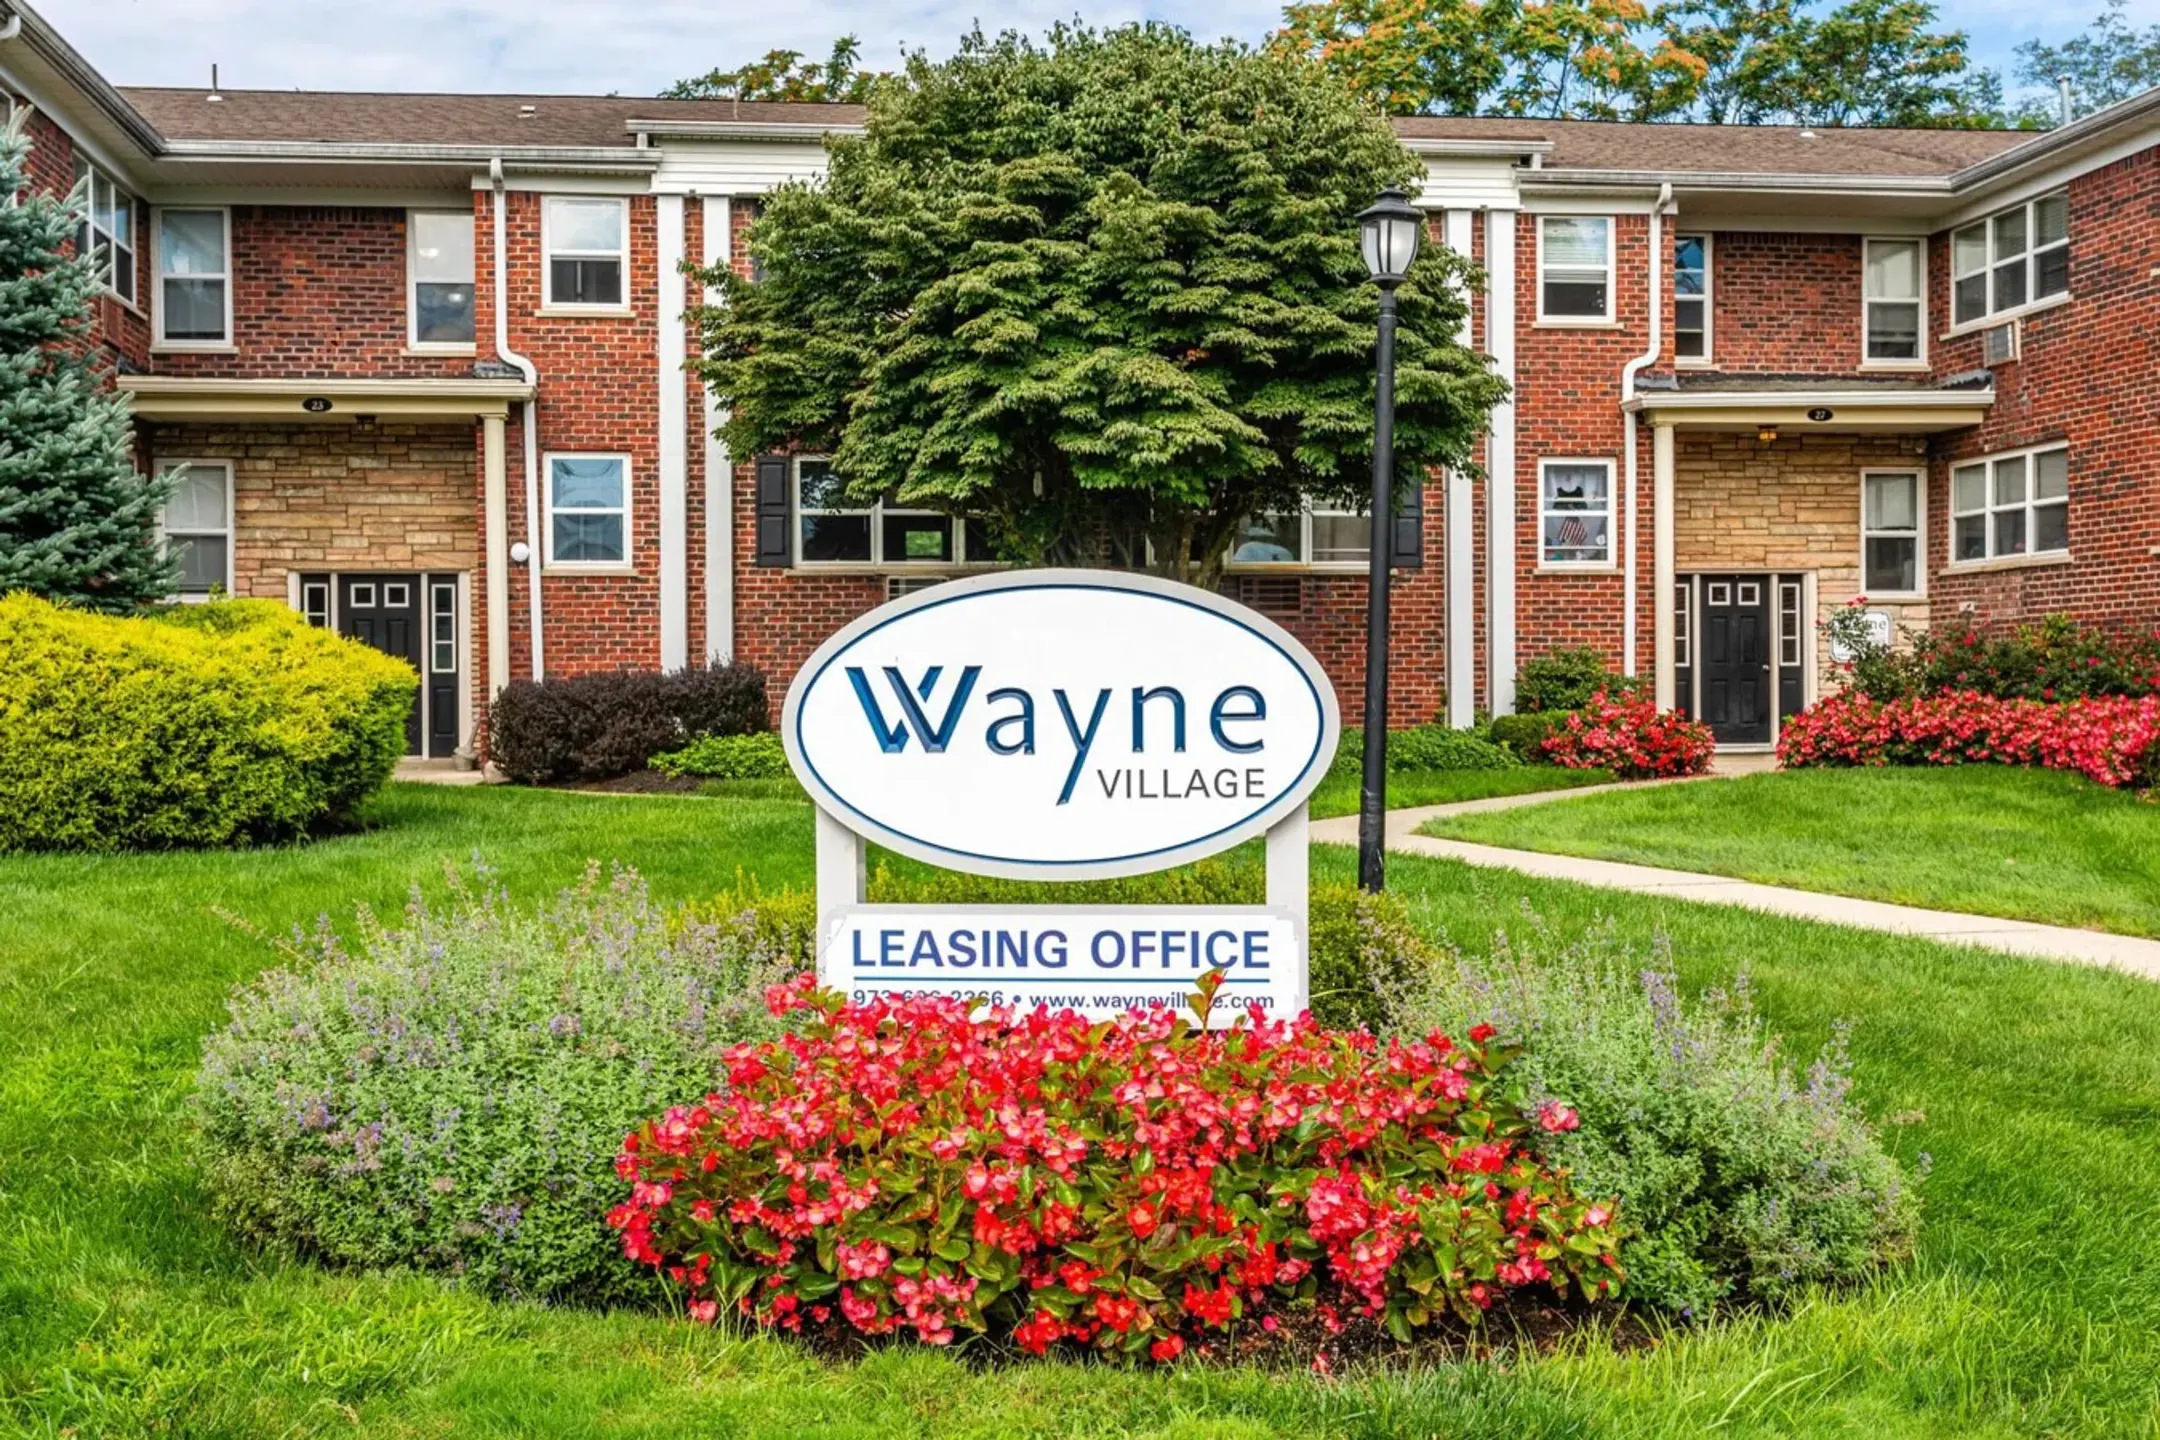 Wayne Village 27 Lancaster Court Wayne NJ Apartments for Rent Rent